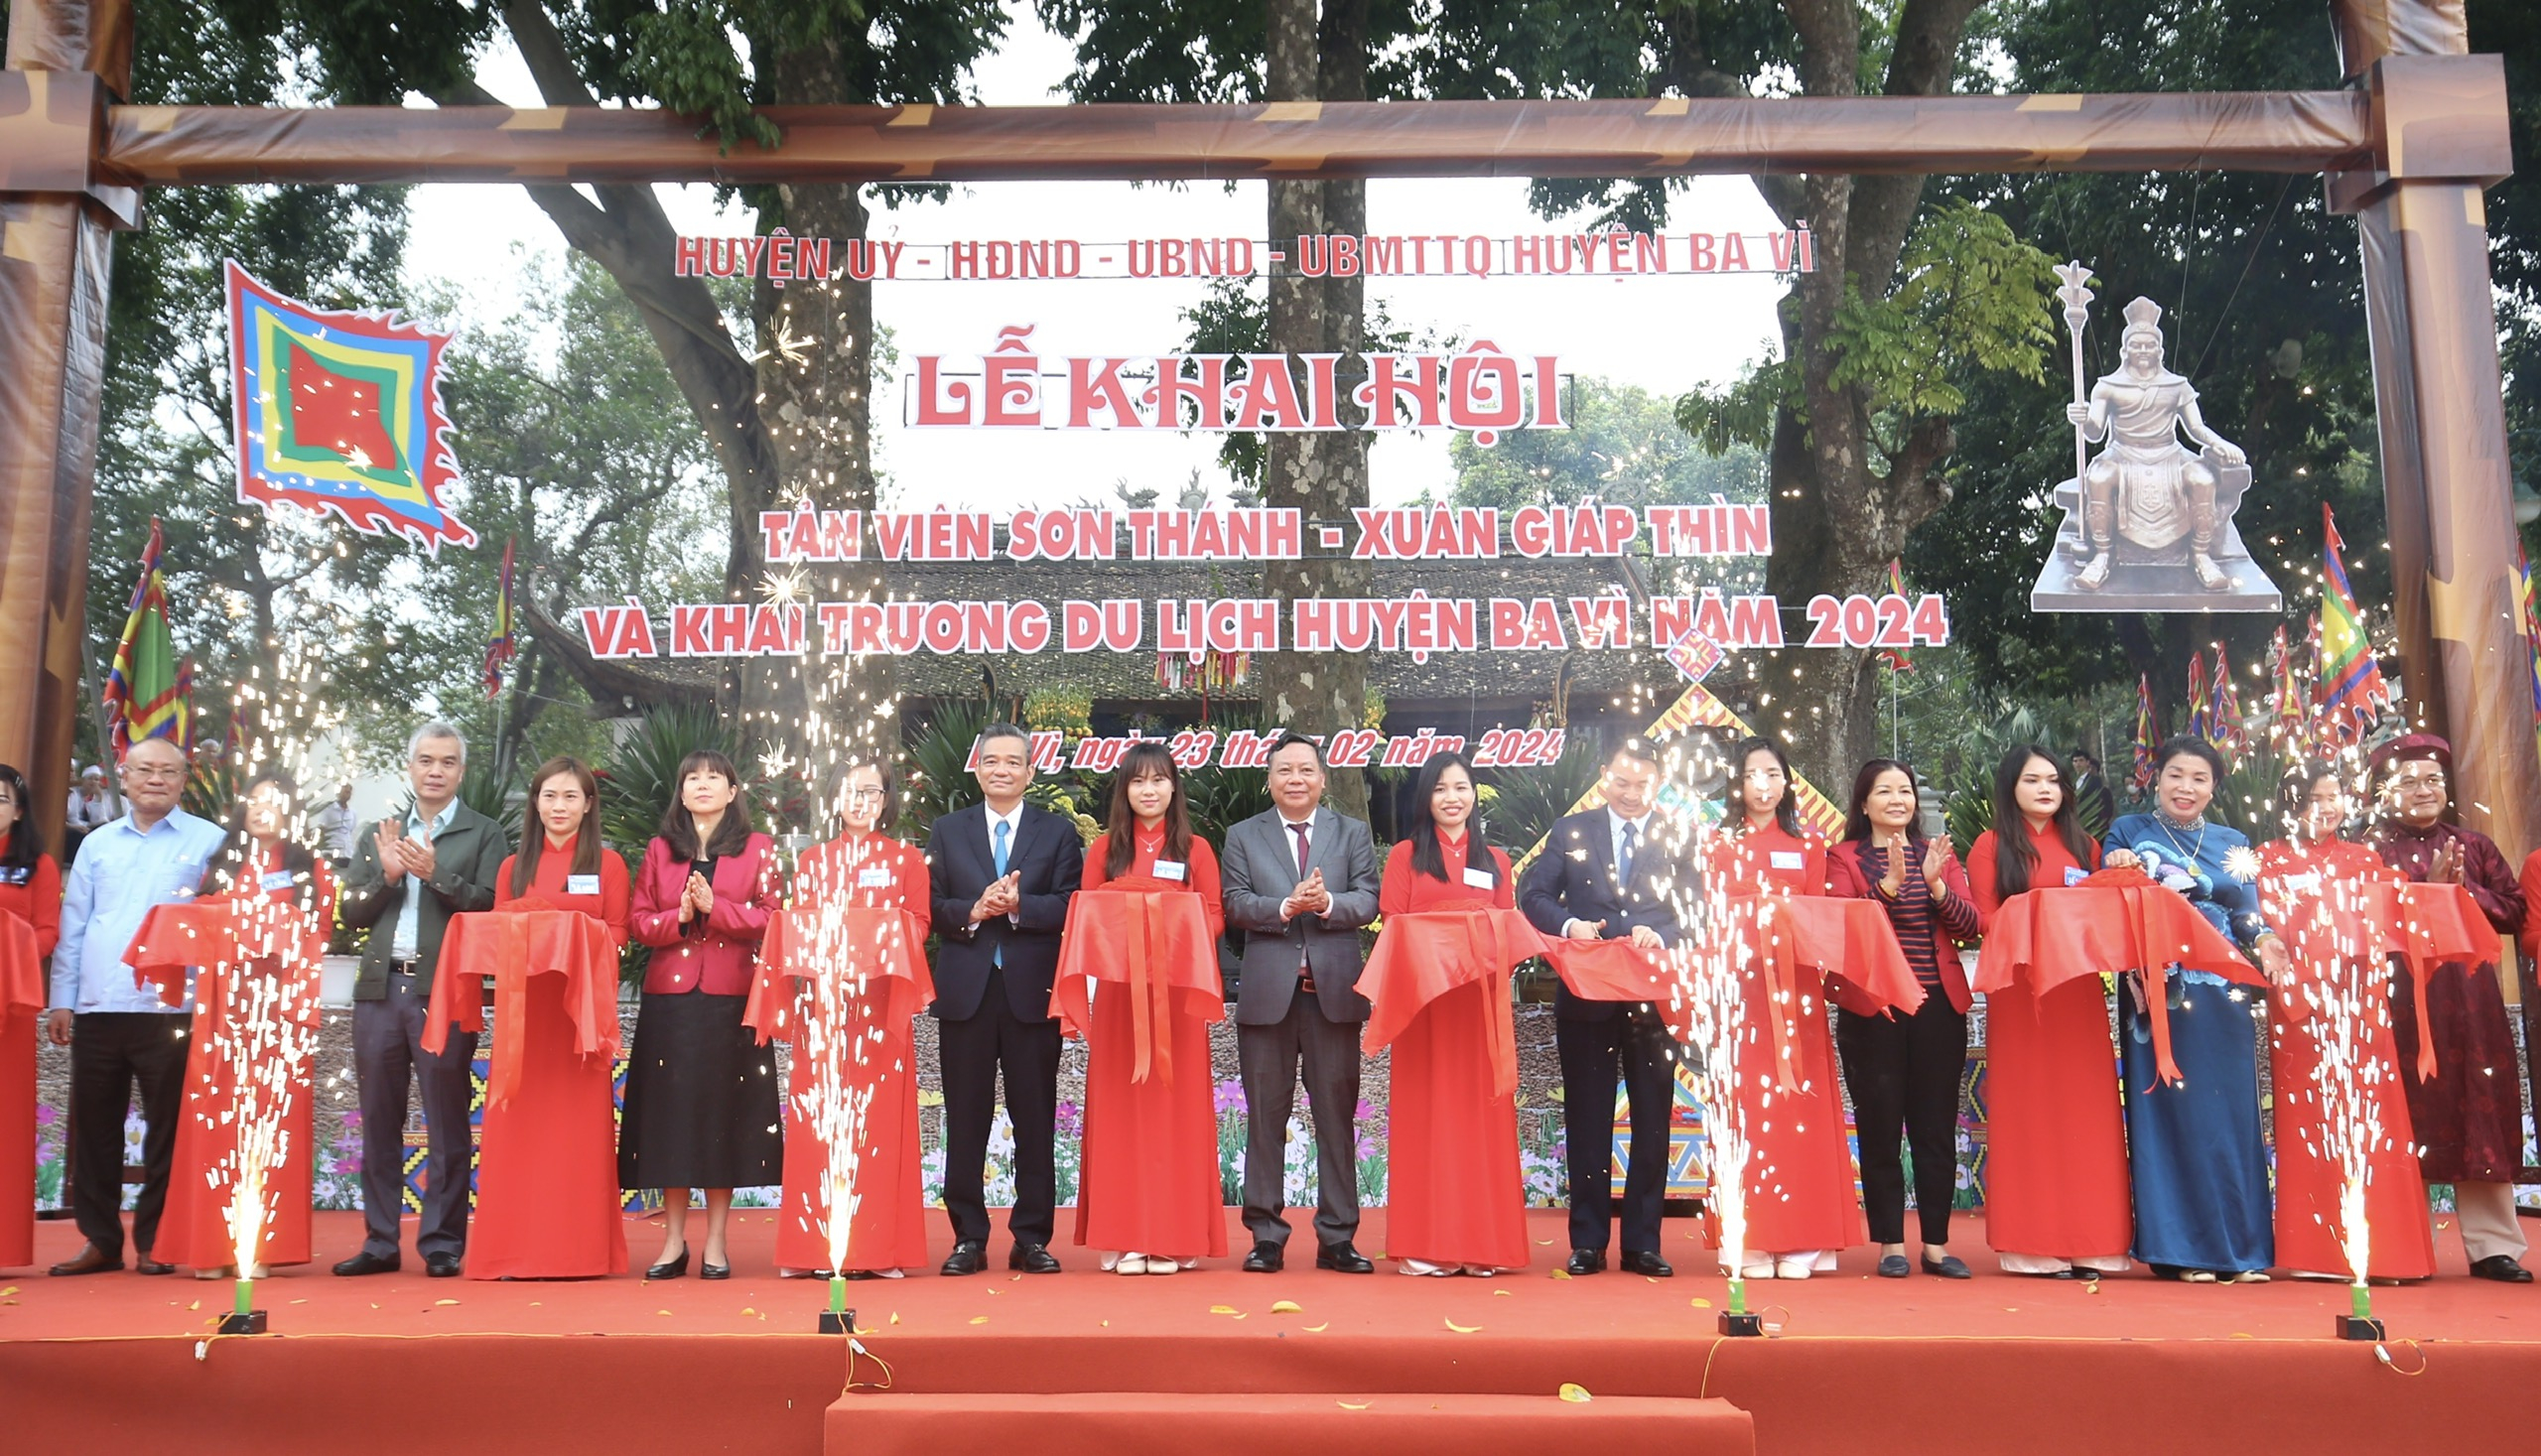 Sáng 23/2, tại đền Hạ thuộc xã Minh Quang, huyện Ba Vì, Hà Nội đã diễn ra Lễ khai hội Tản Viên Sơn Thánh - Xuân Giáp Thìn và khai trương du lịch huyện Ba Vì năm 2024.